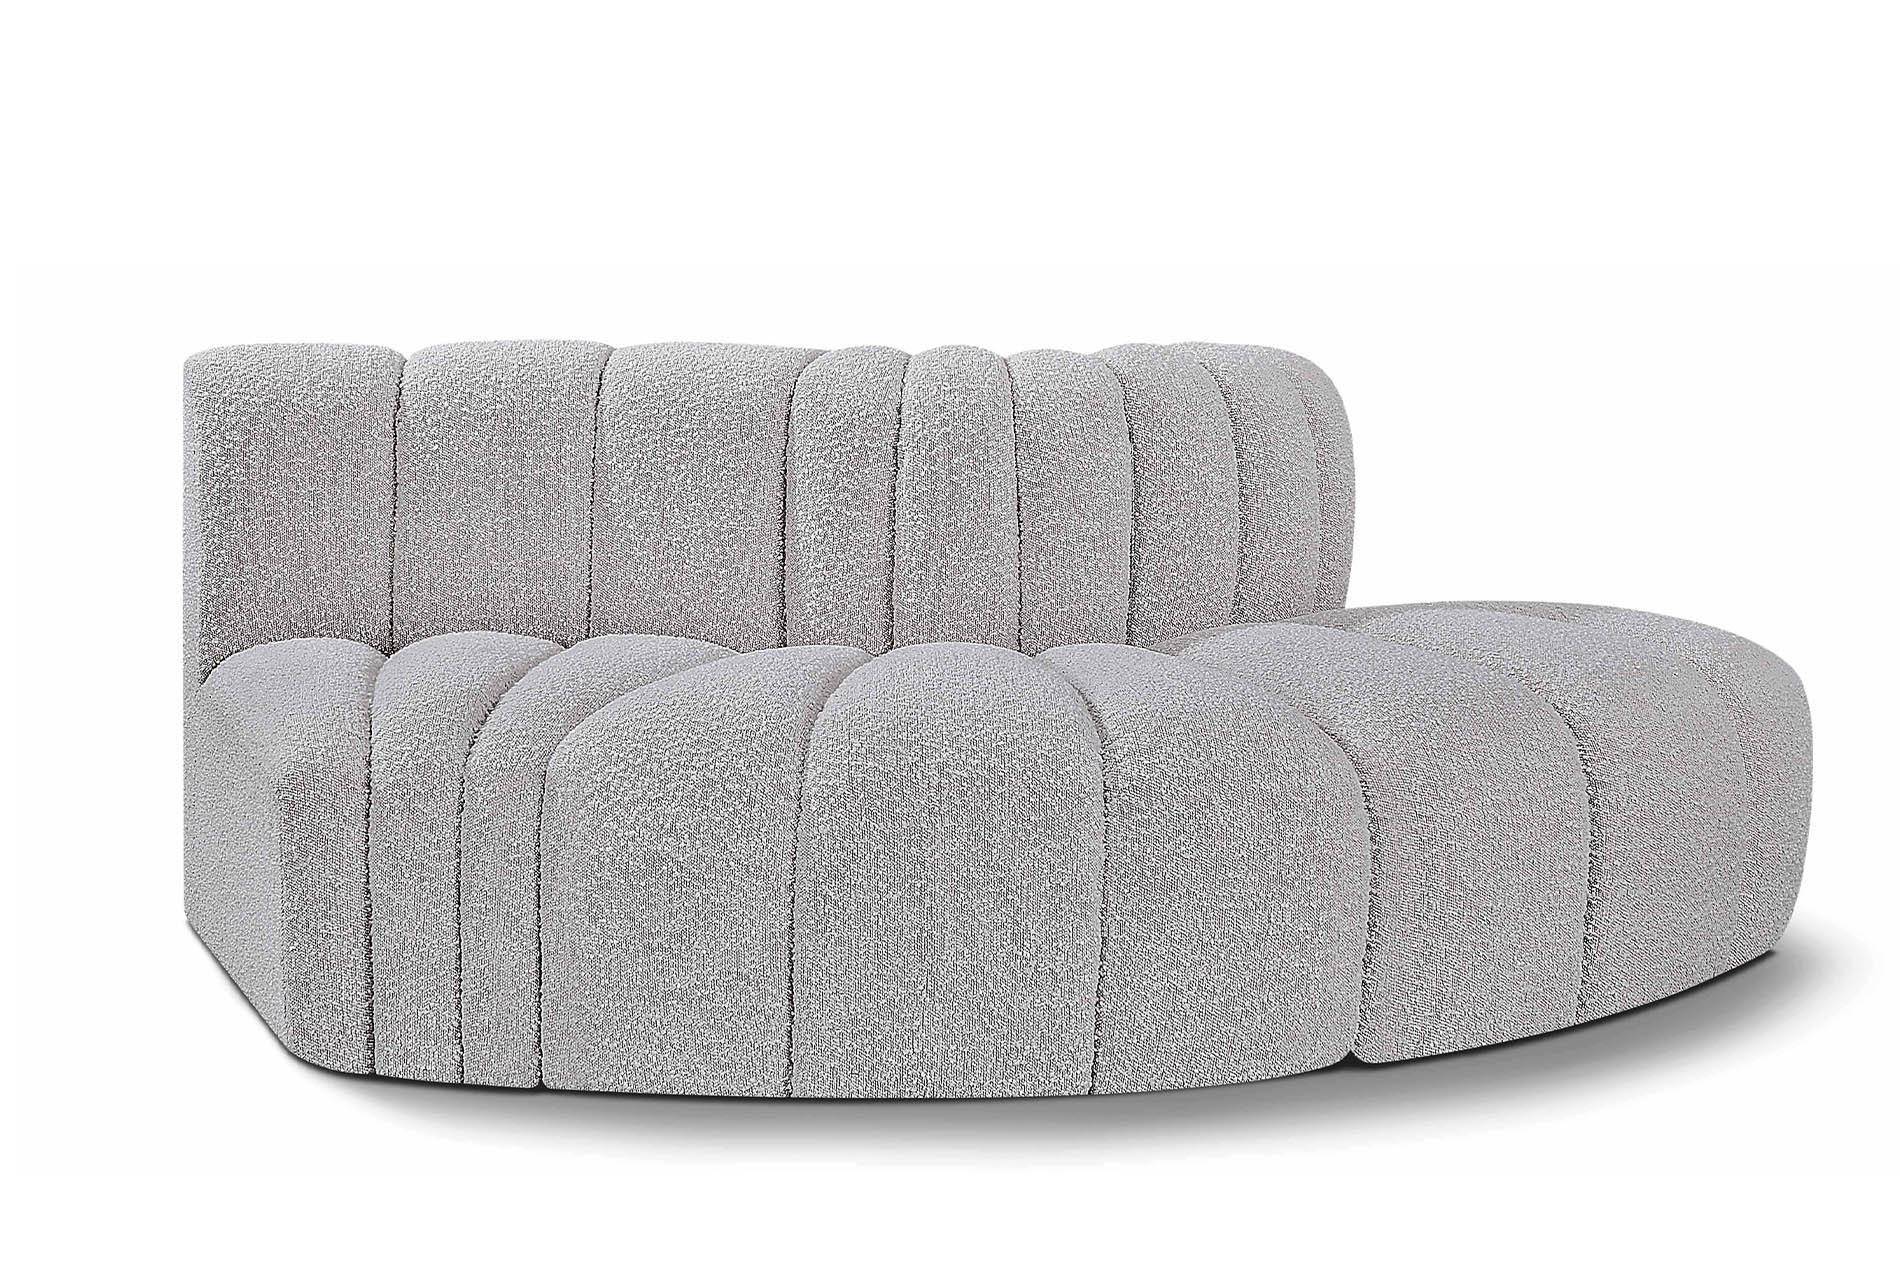 Contemporary, Modern Modular Sectional Sofa ARC 102Grey-S3E 102Grey-S3E in Gray 